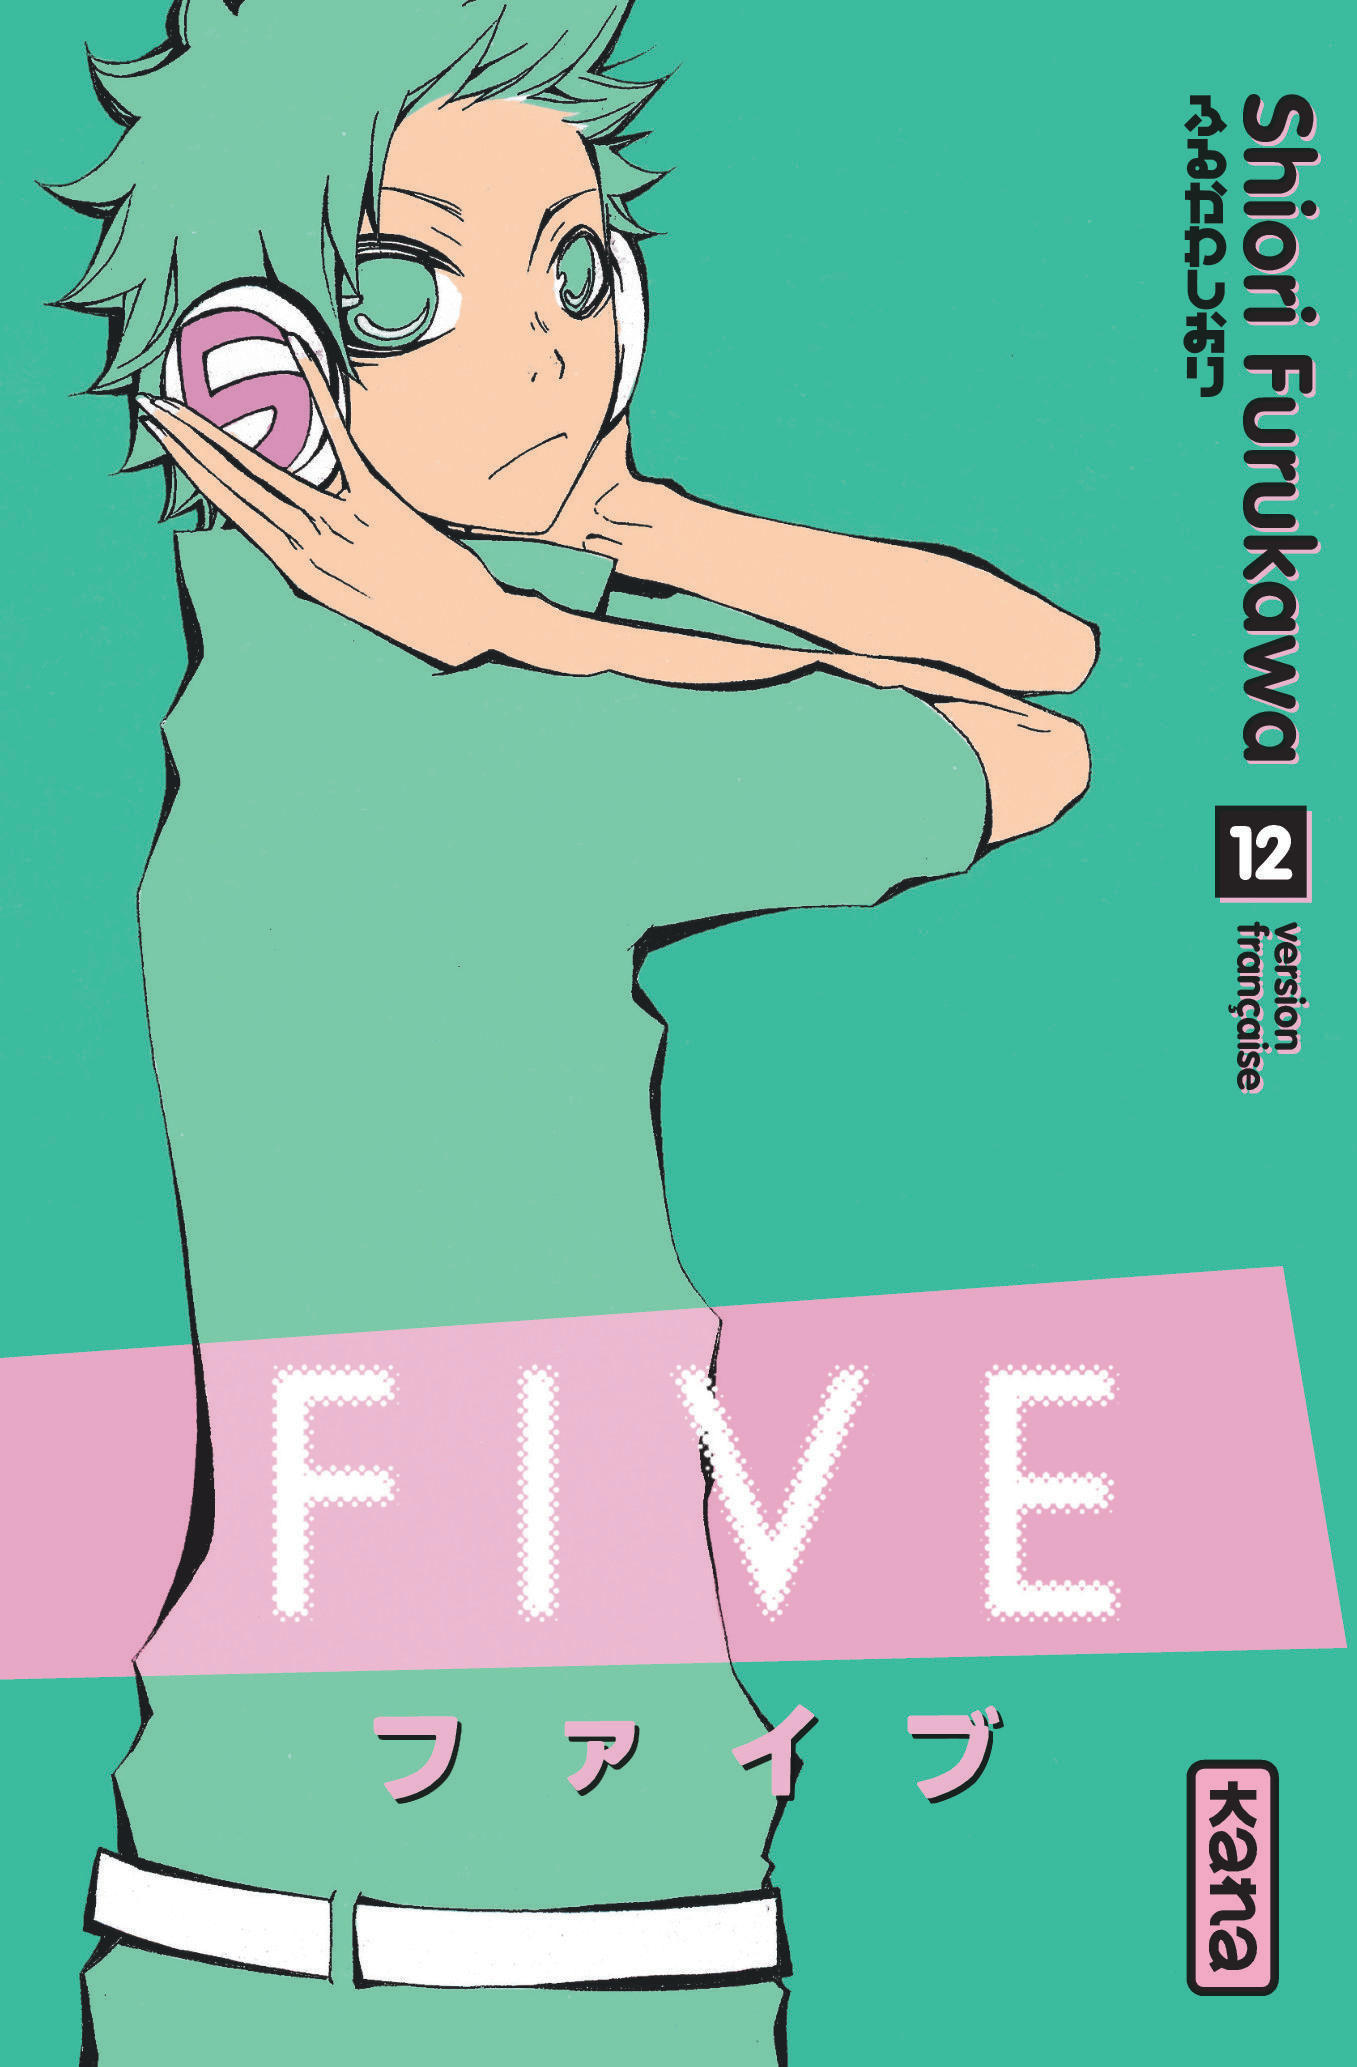 Five – Tome 12 - couv